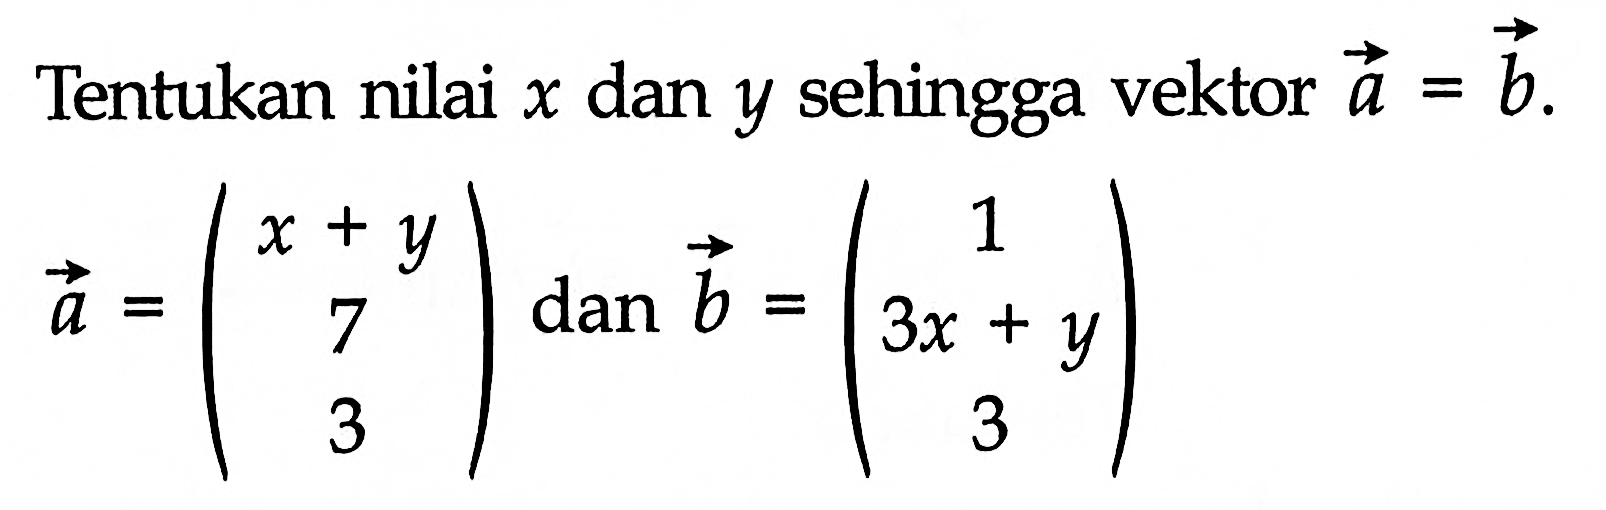 Tentukan nilai  x  dan  y  sehingga vektor  a=b.
vektor a=(x+y 7 3) dan vektor b=(1 3x+y 3)